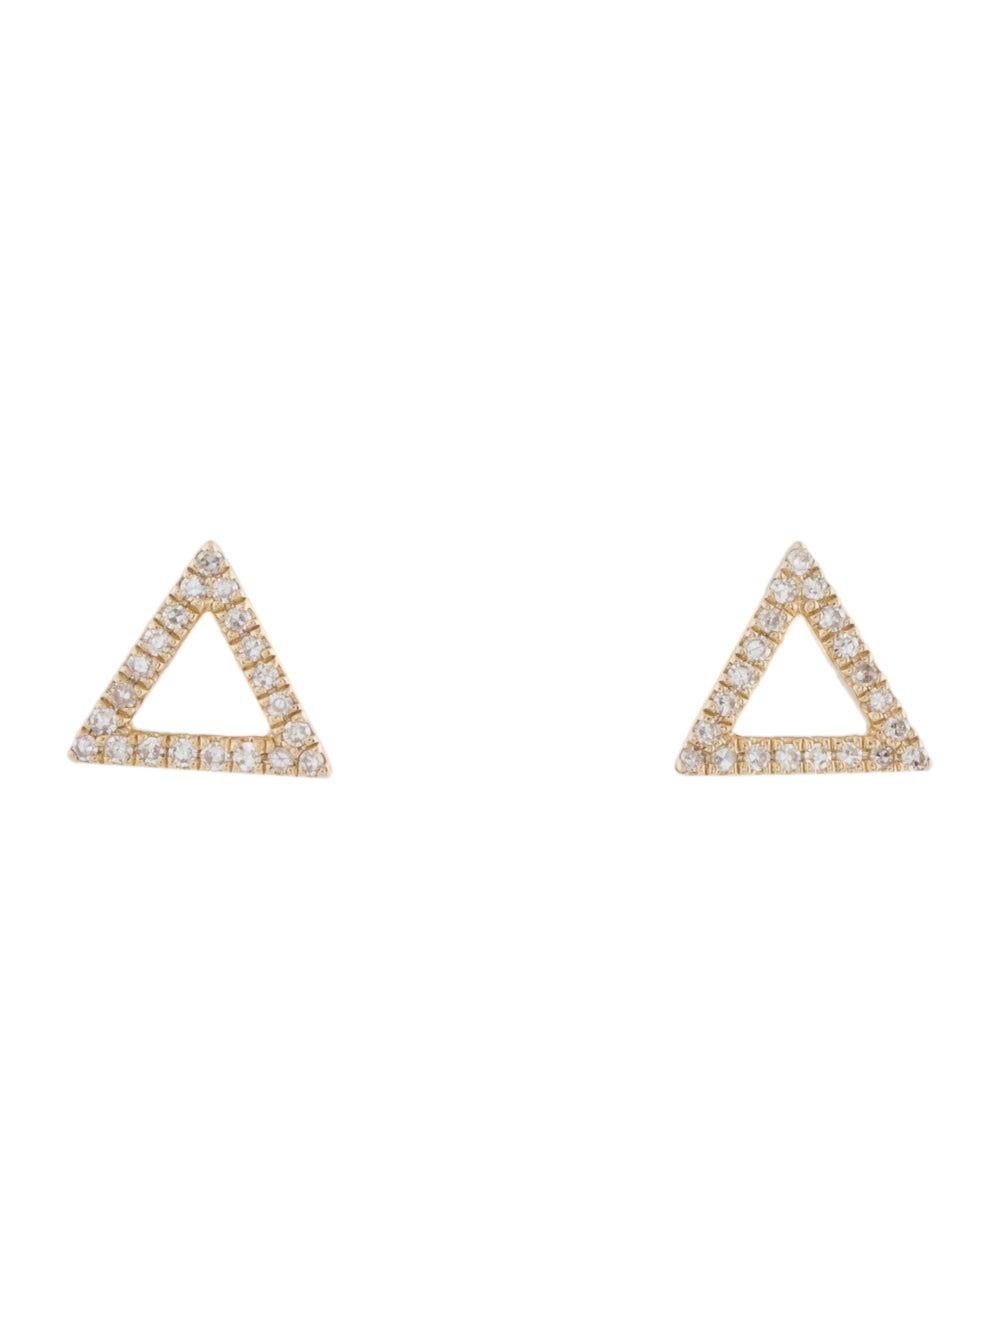 Offene Dreiecks-Ohrringe: Diese beliebten Ohrringe in Form eines offenen Dreiecks sind aus echtem 14-karätigem Gold gefertigt und mit 42 natürlichen weißen, funkelnden Diamanten von ca. 0,12 ct. Zertifizierte Diamanten. Diamant Farbe & Klarheit